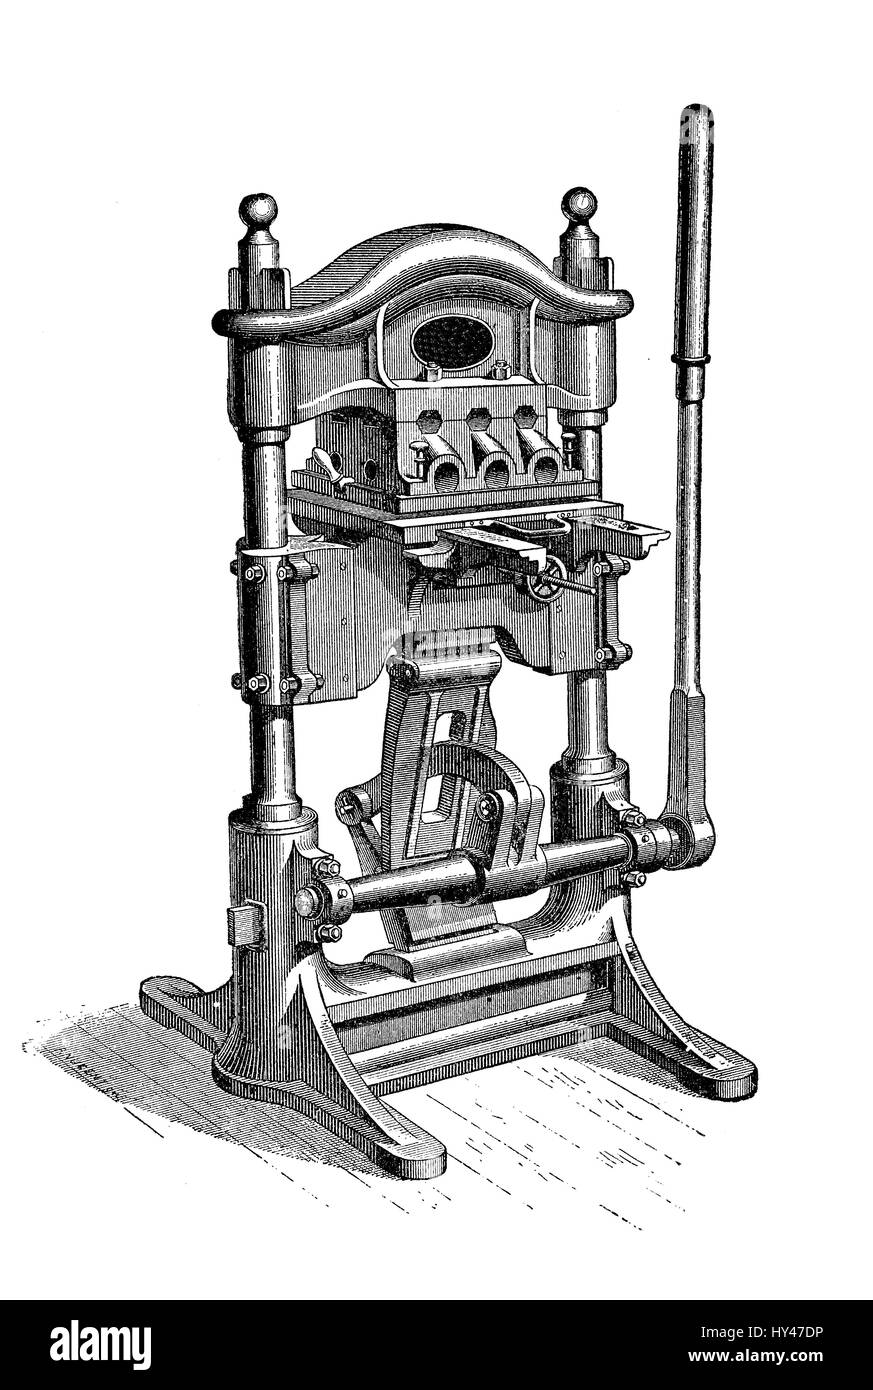 Machine de dorure pour appuyer sur la production, la fixation mécanique une fine couche d'or sur les surfaces, XIX siècle illustration Banque D'Images